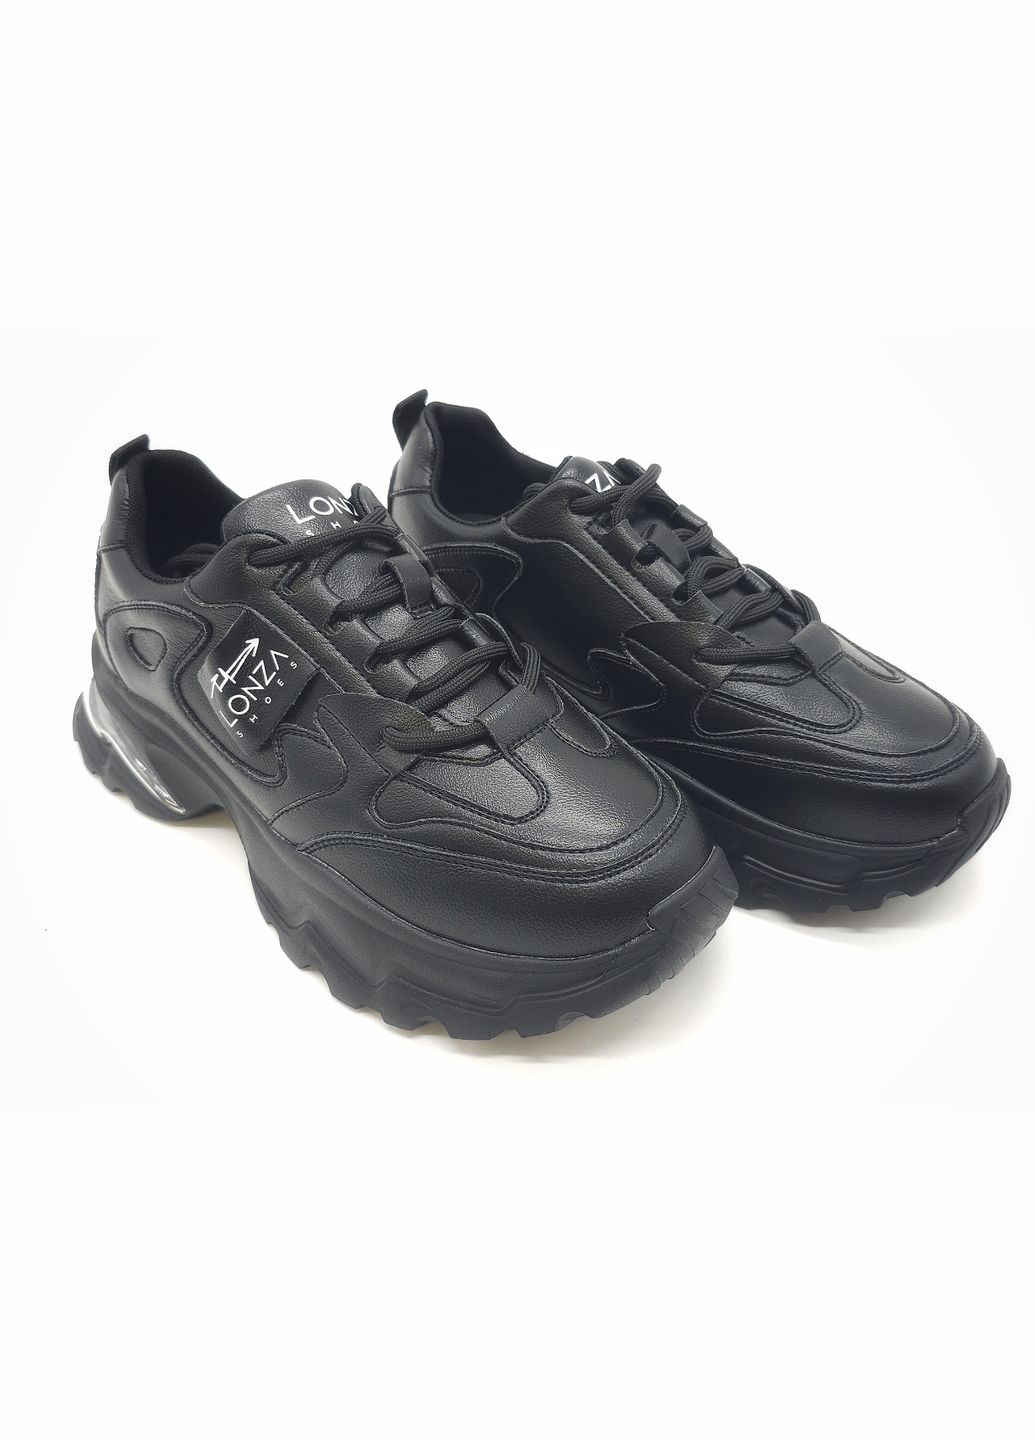 Чорні всесезонні жіночі кросівки чорні шкіряні l-11-34 25,5 см (р) Lonza